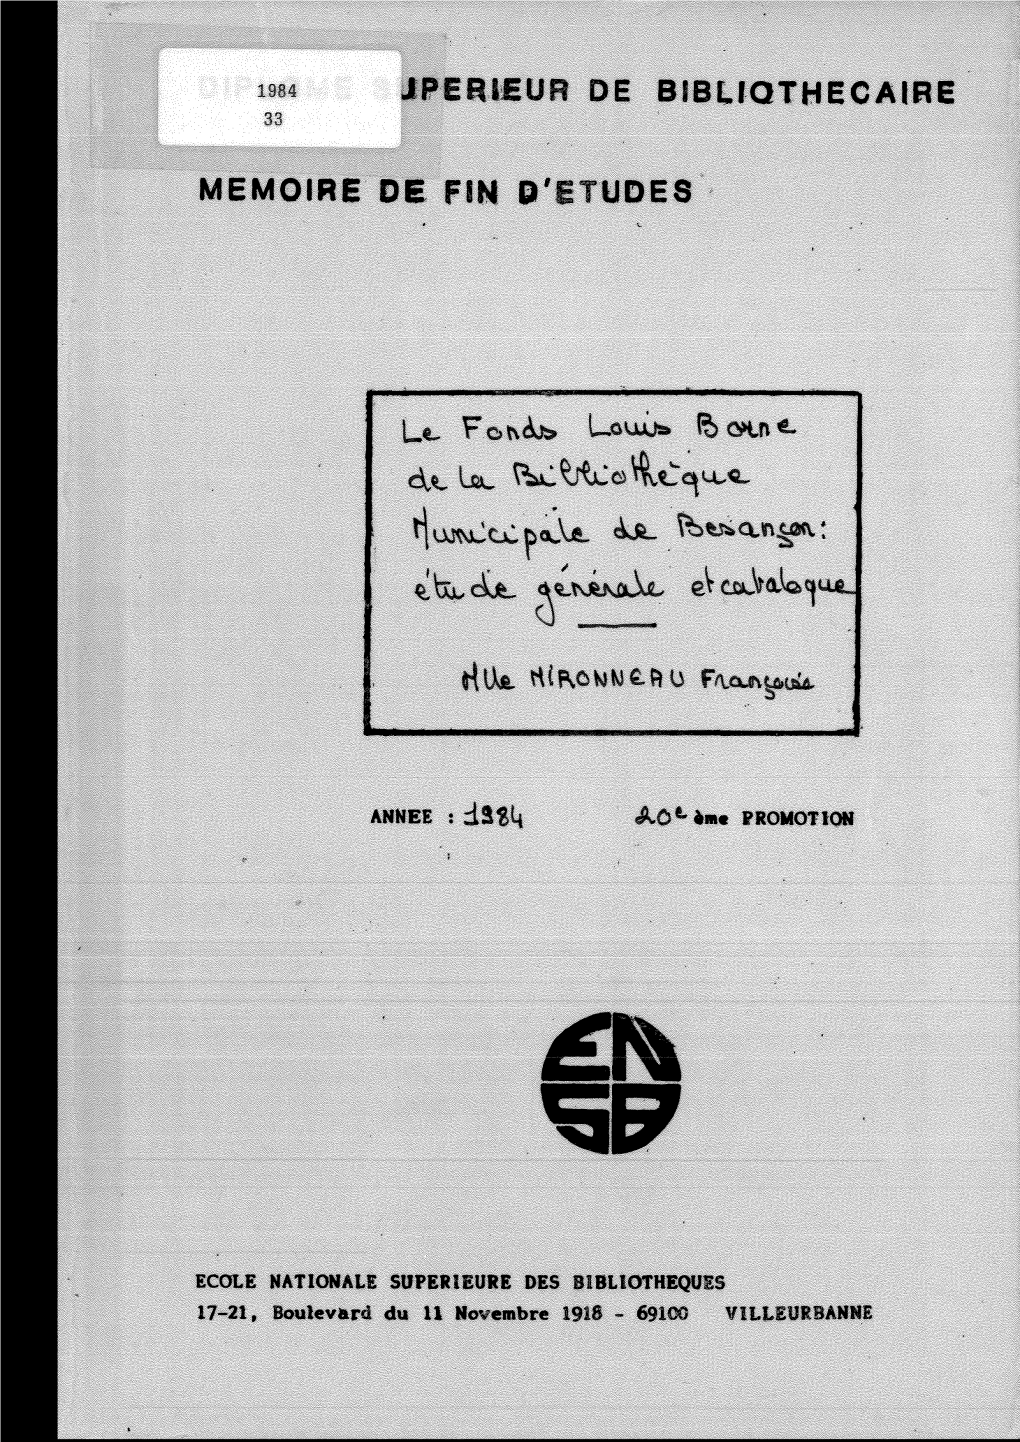 Fonds Louis Borne De La Bibliothèque Municipale De Besançon